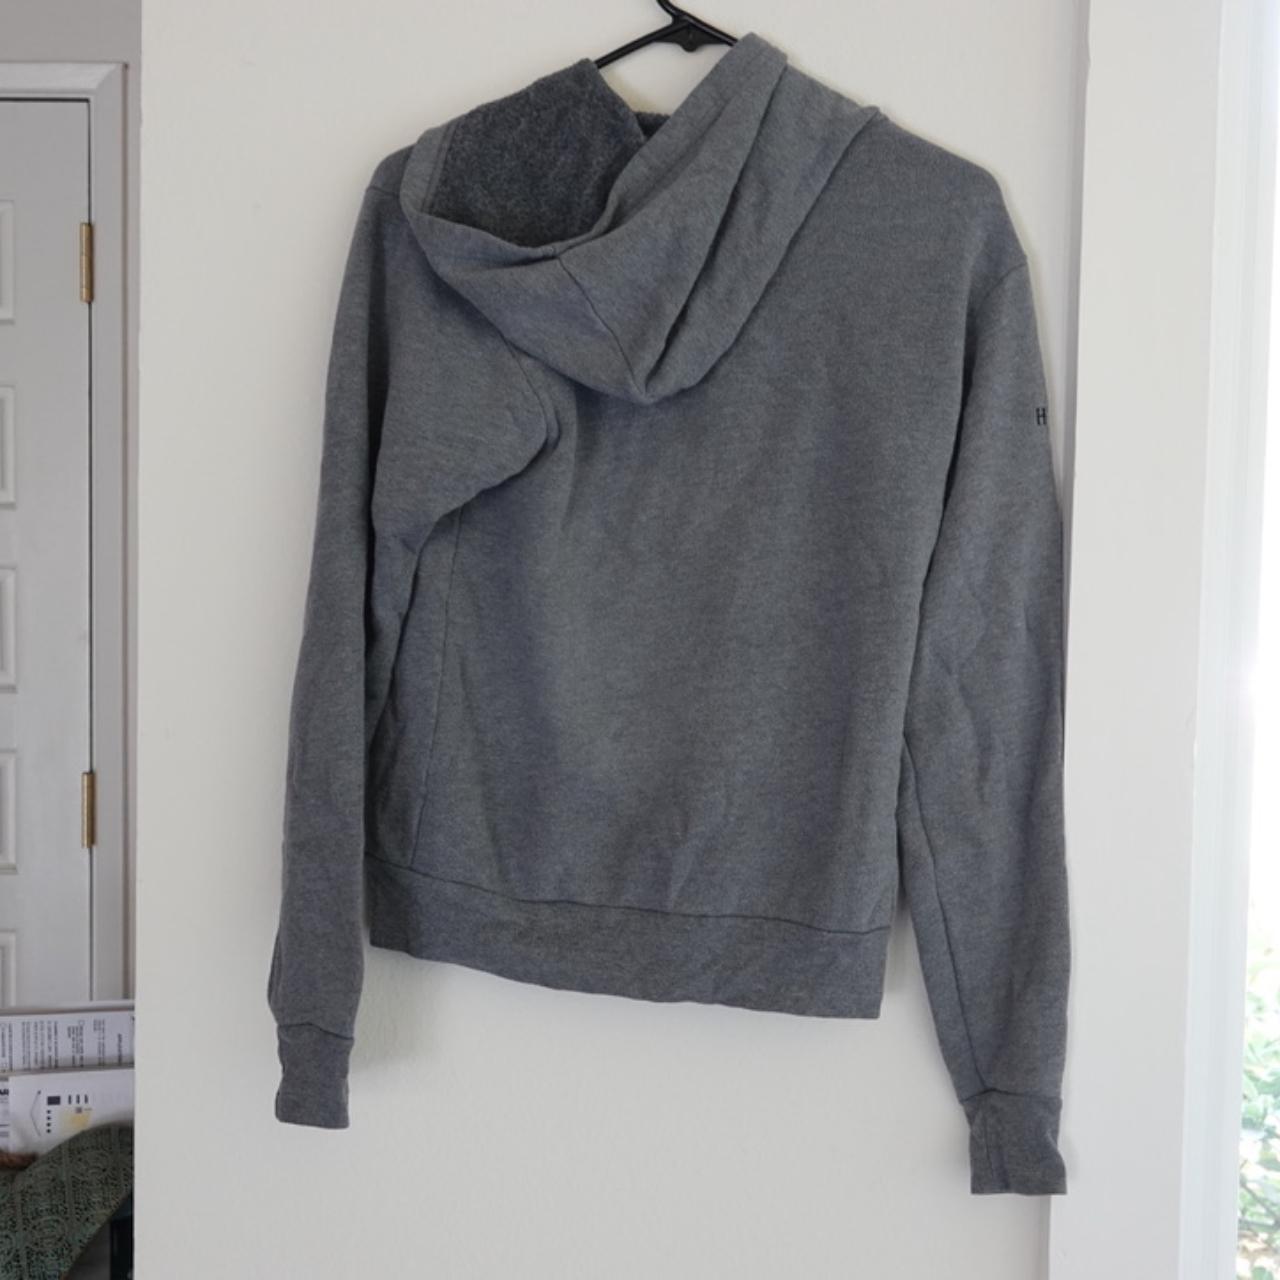 Product Image 3 - Grey Alexander Hamilton zip-up hoodie.